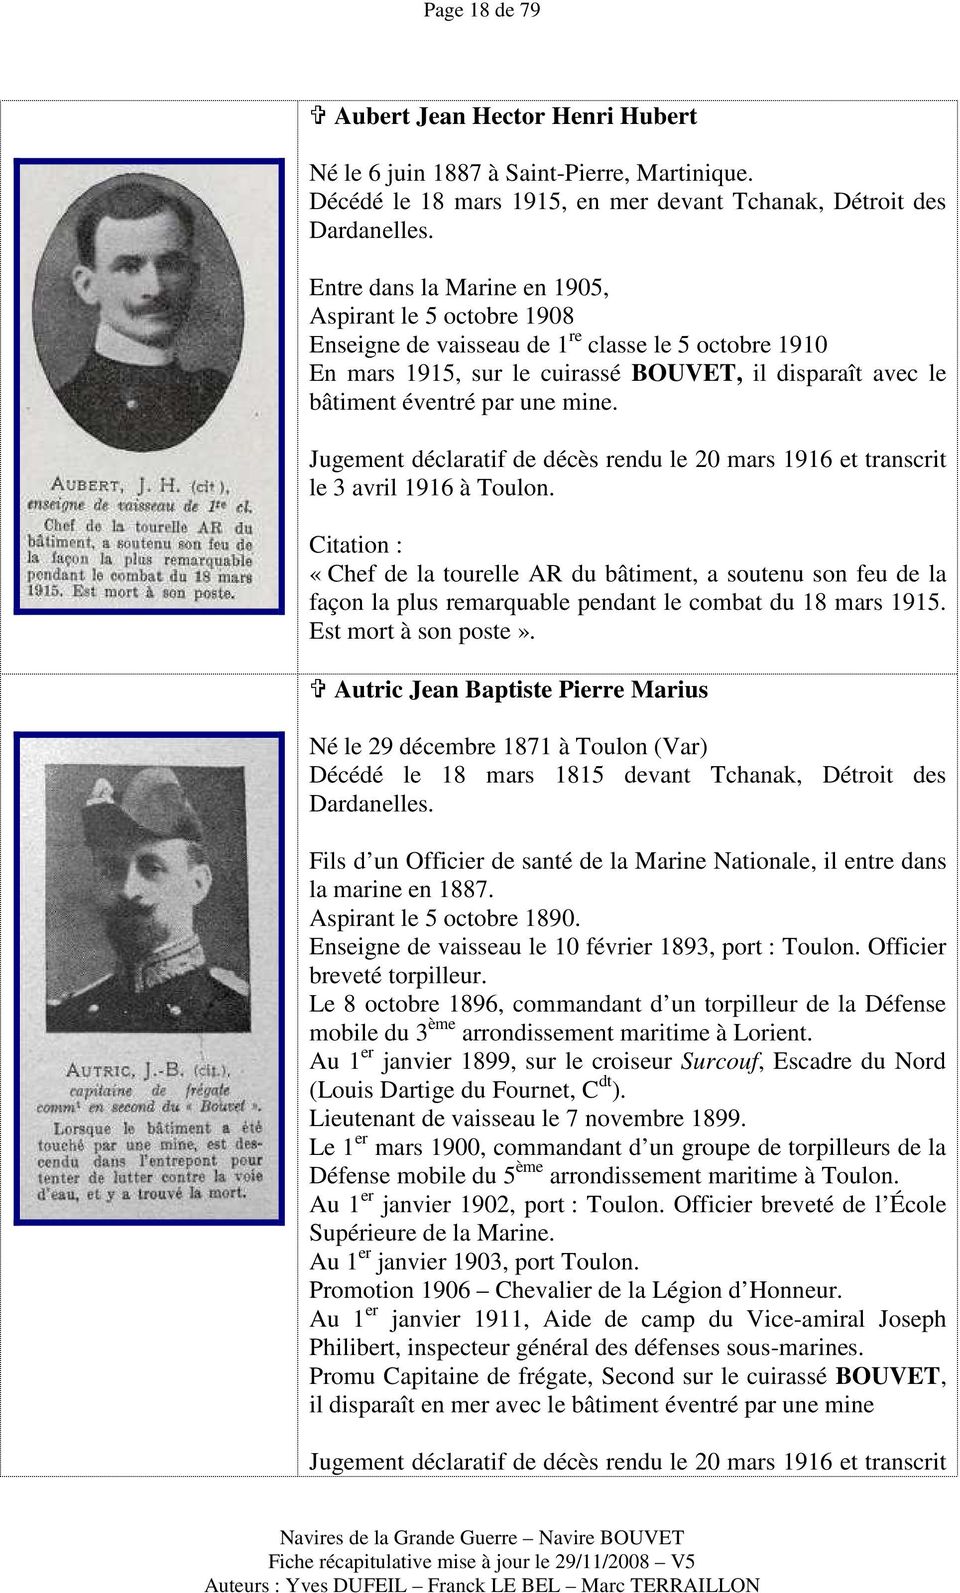 Jugement déclaratif de décès rendu le 20 mars 1916 et transcrit le 3 avril 1916 à Toulon.